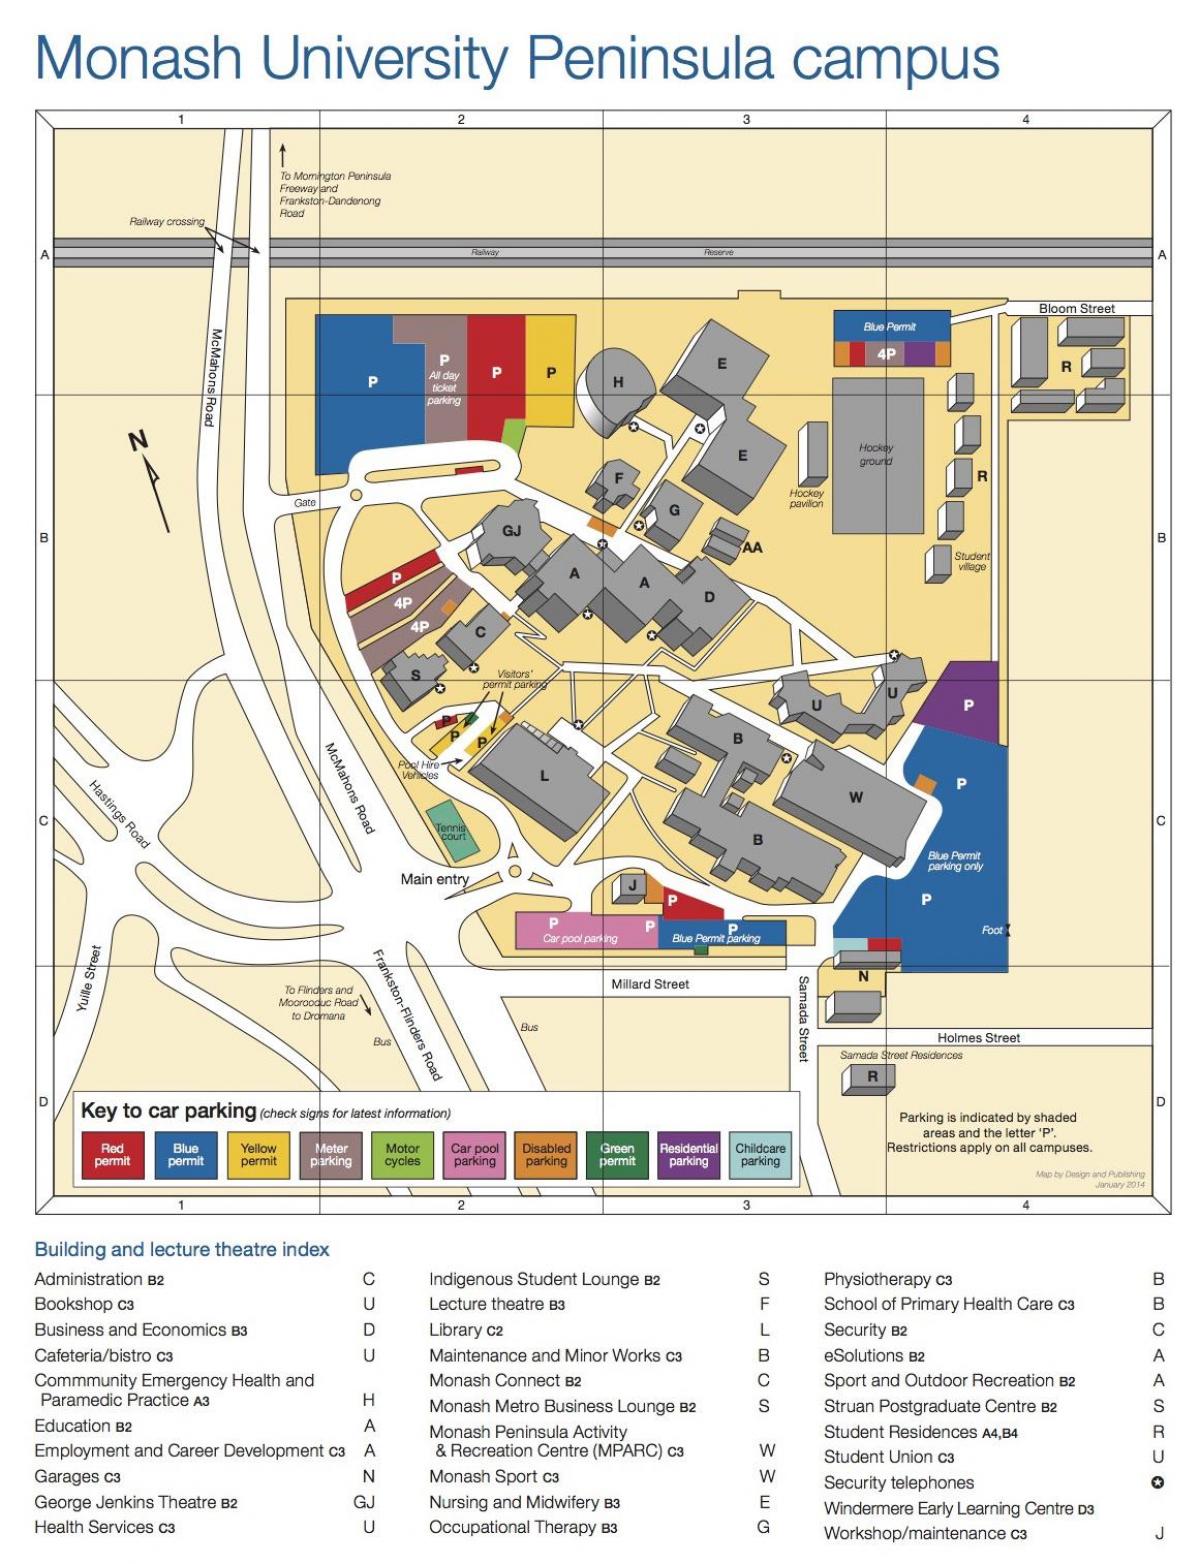 Monash یونیورسٹی کیمپس کا نقشہ